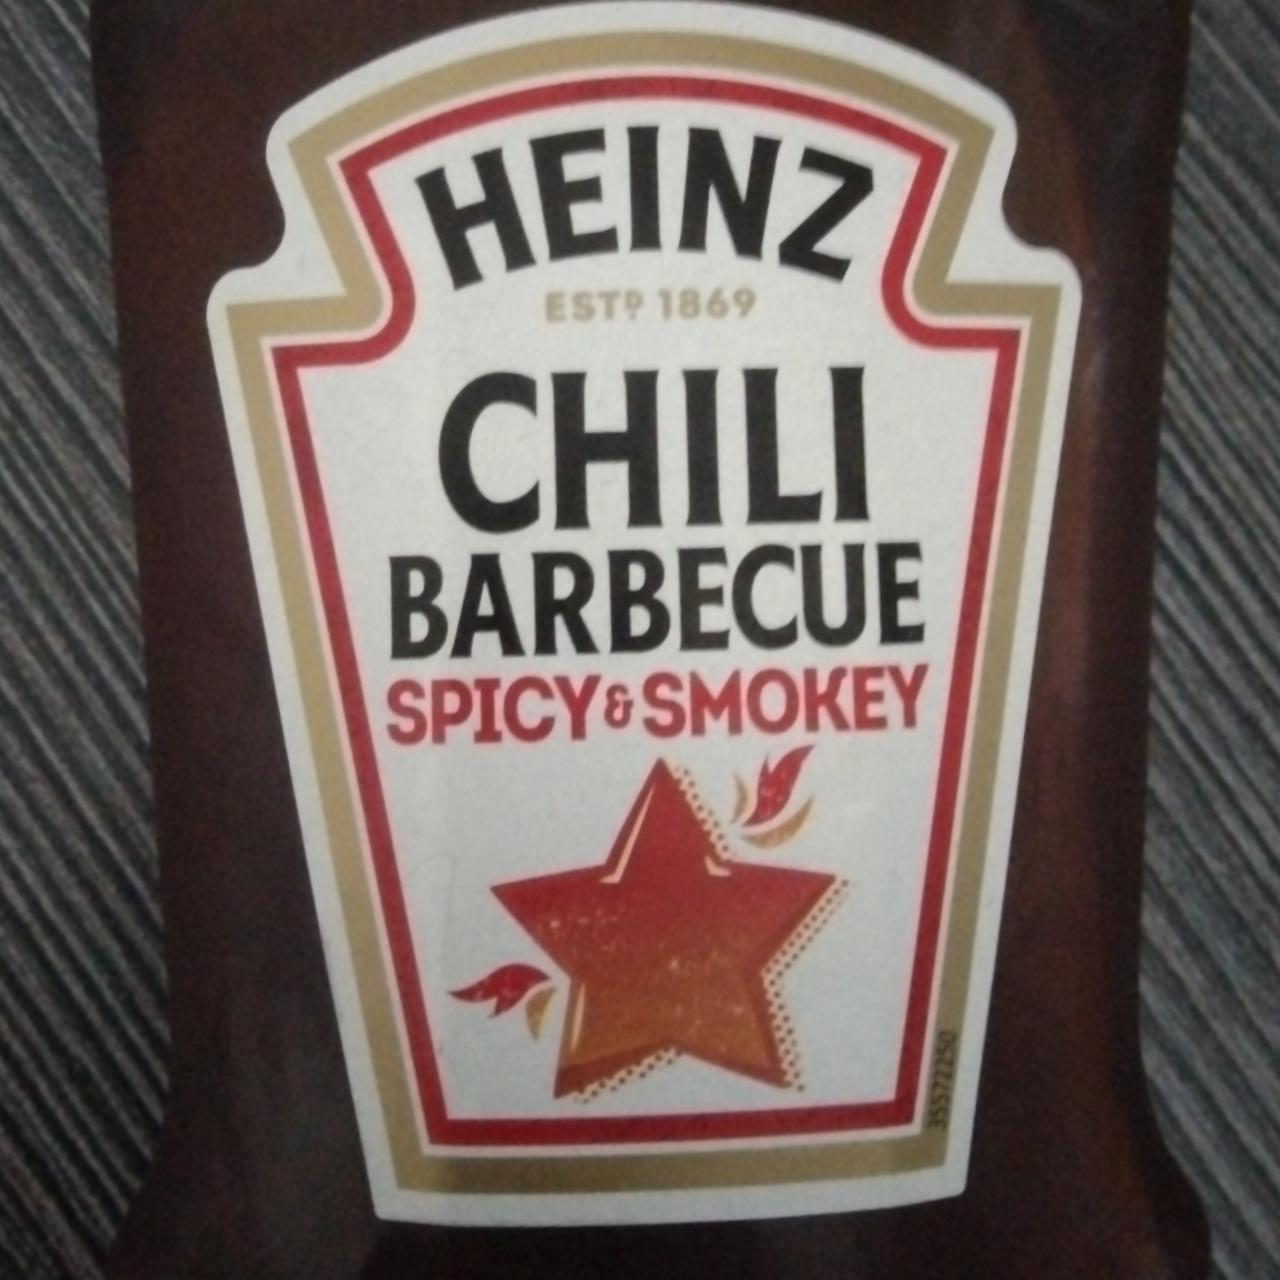 Képek - Heinz barbecue szósz chili 